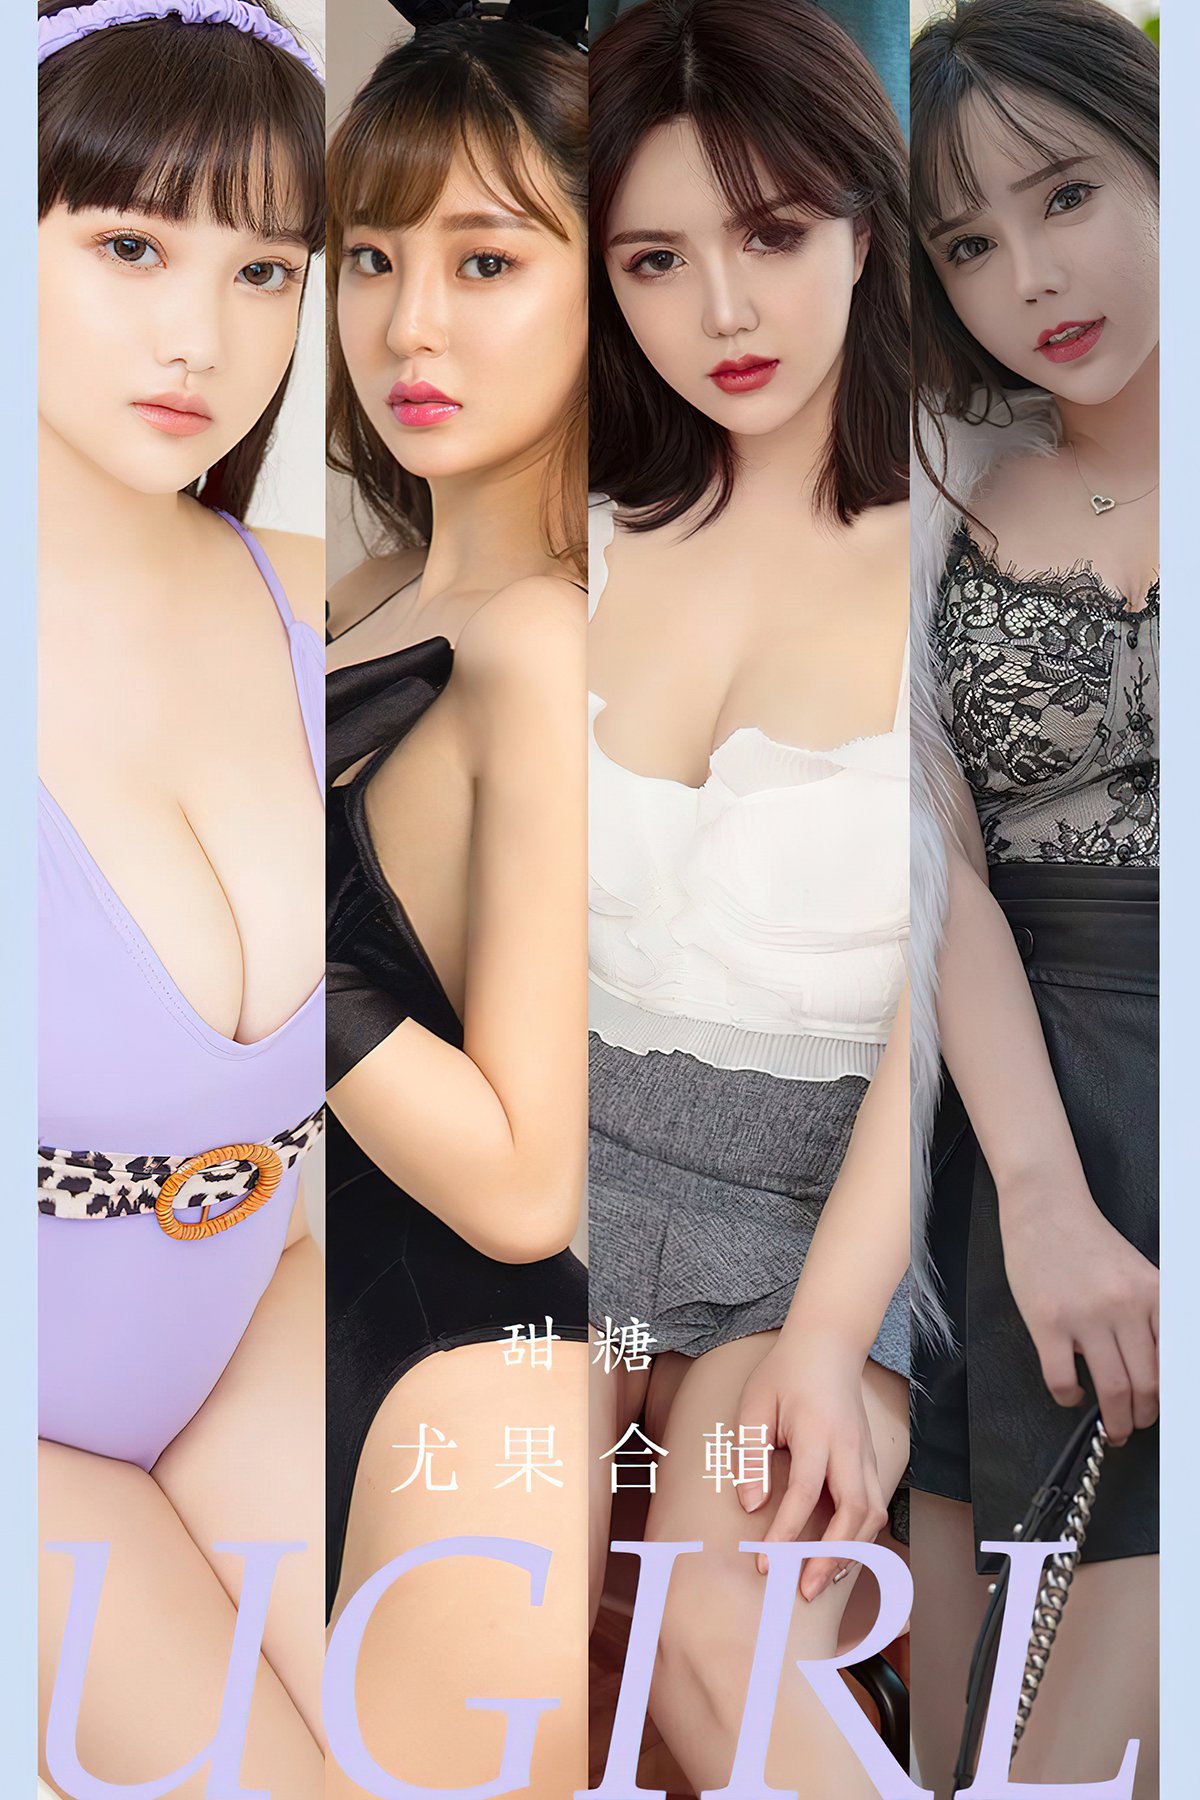 Ugirls App尤果圈 No.2588 Yugo Compilation